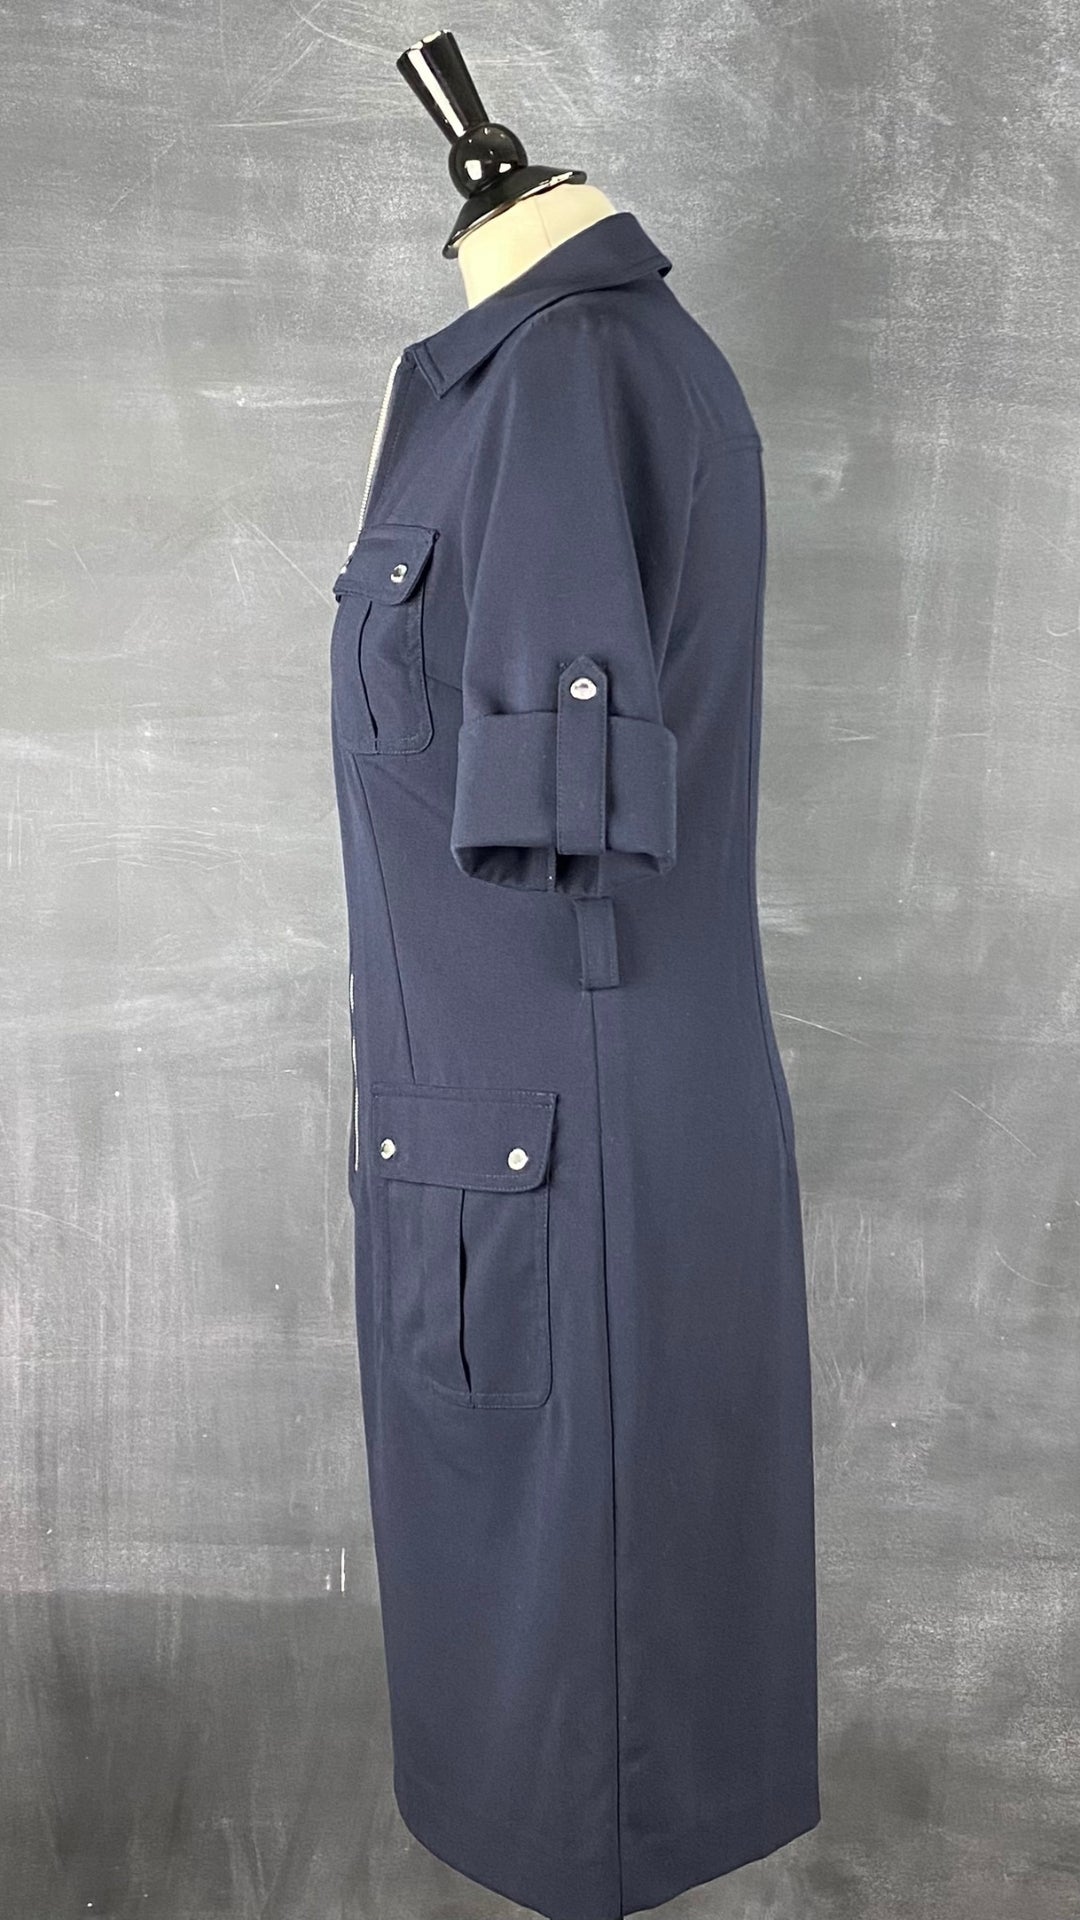 Robe utilitaire marine Michael Kors. Polyvalente et facile à agencer, cette robe est une base de la garde-robe. Vue de côté.